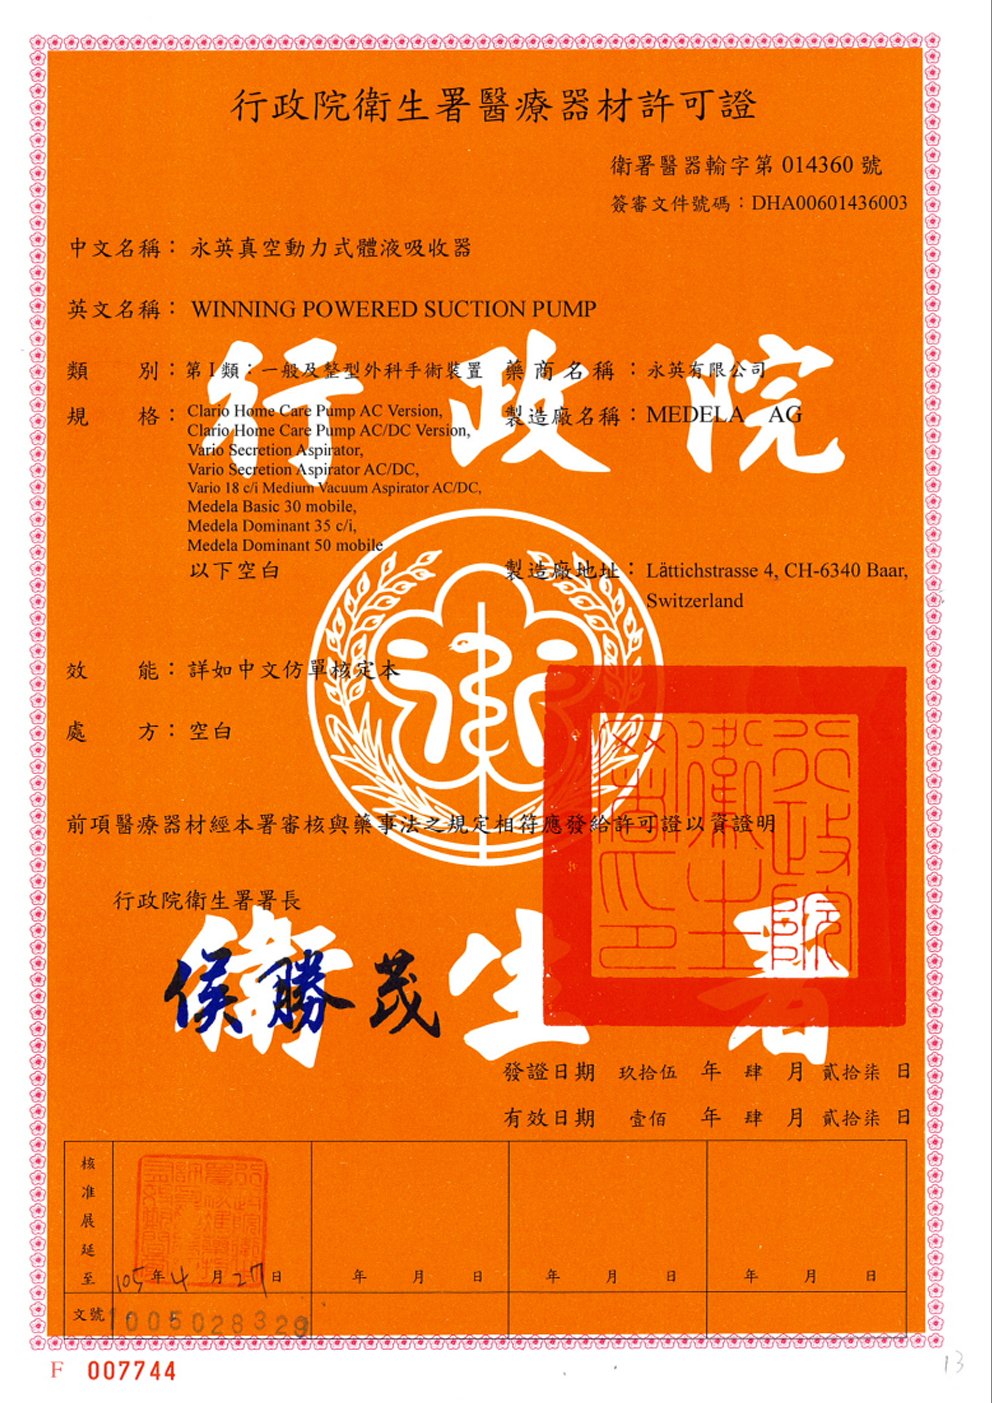 雙渦輪引流技術 台灣衛生福利部醫療器材許可證